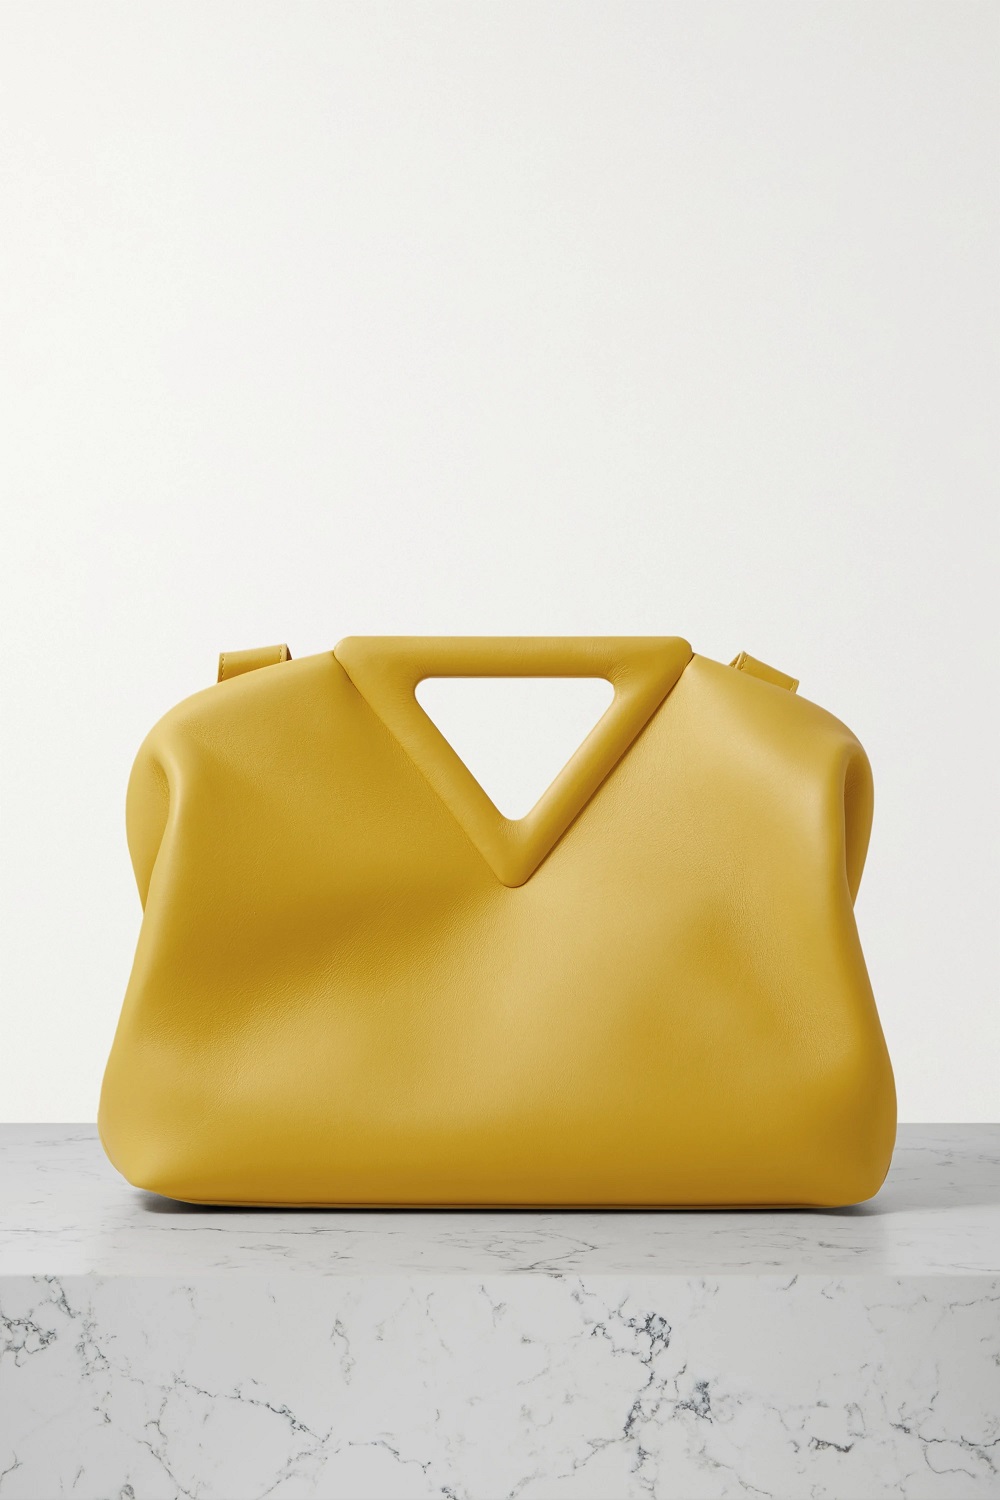 Bottega Veneta torbe u boji proljeće ljeto 2021.